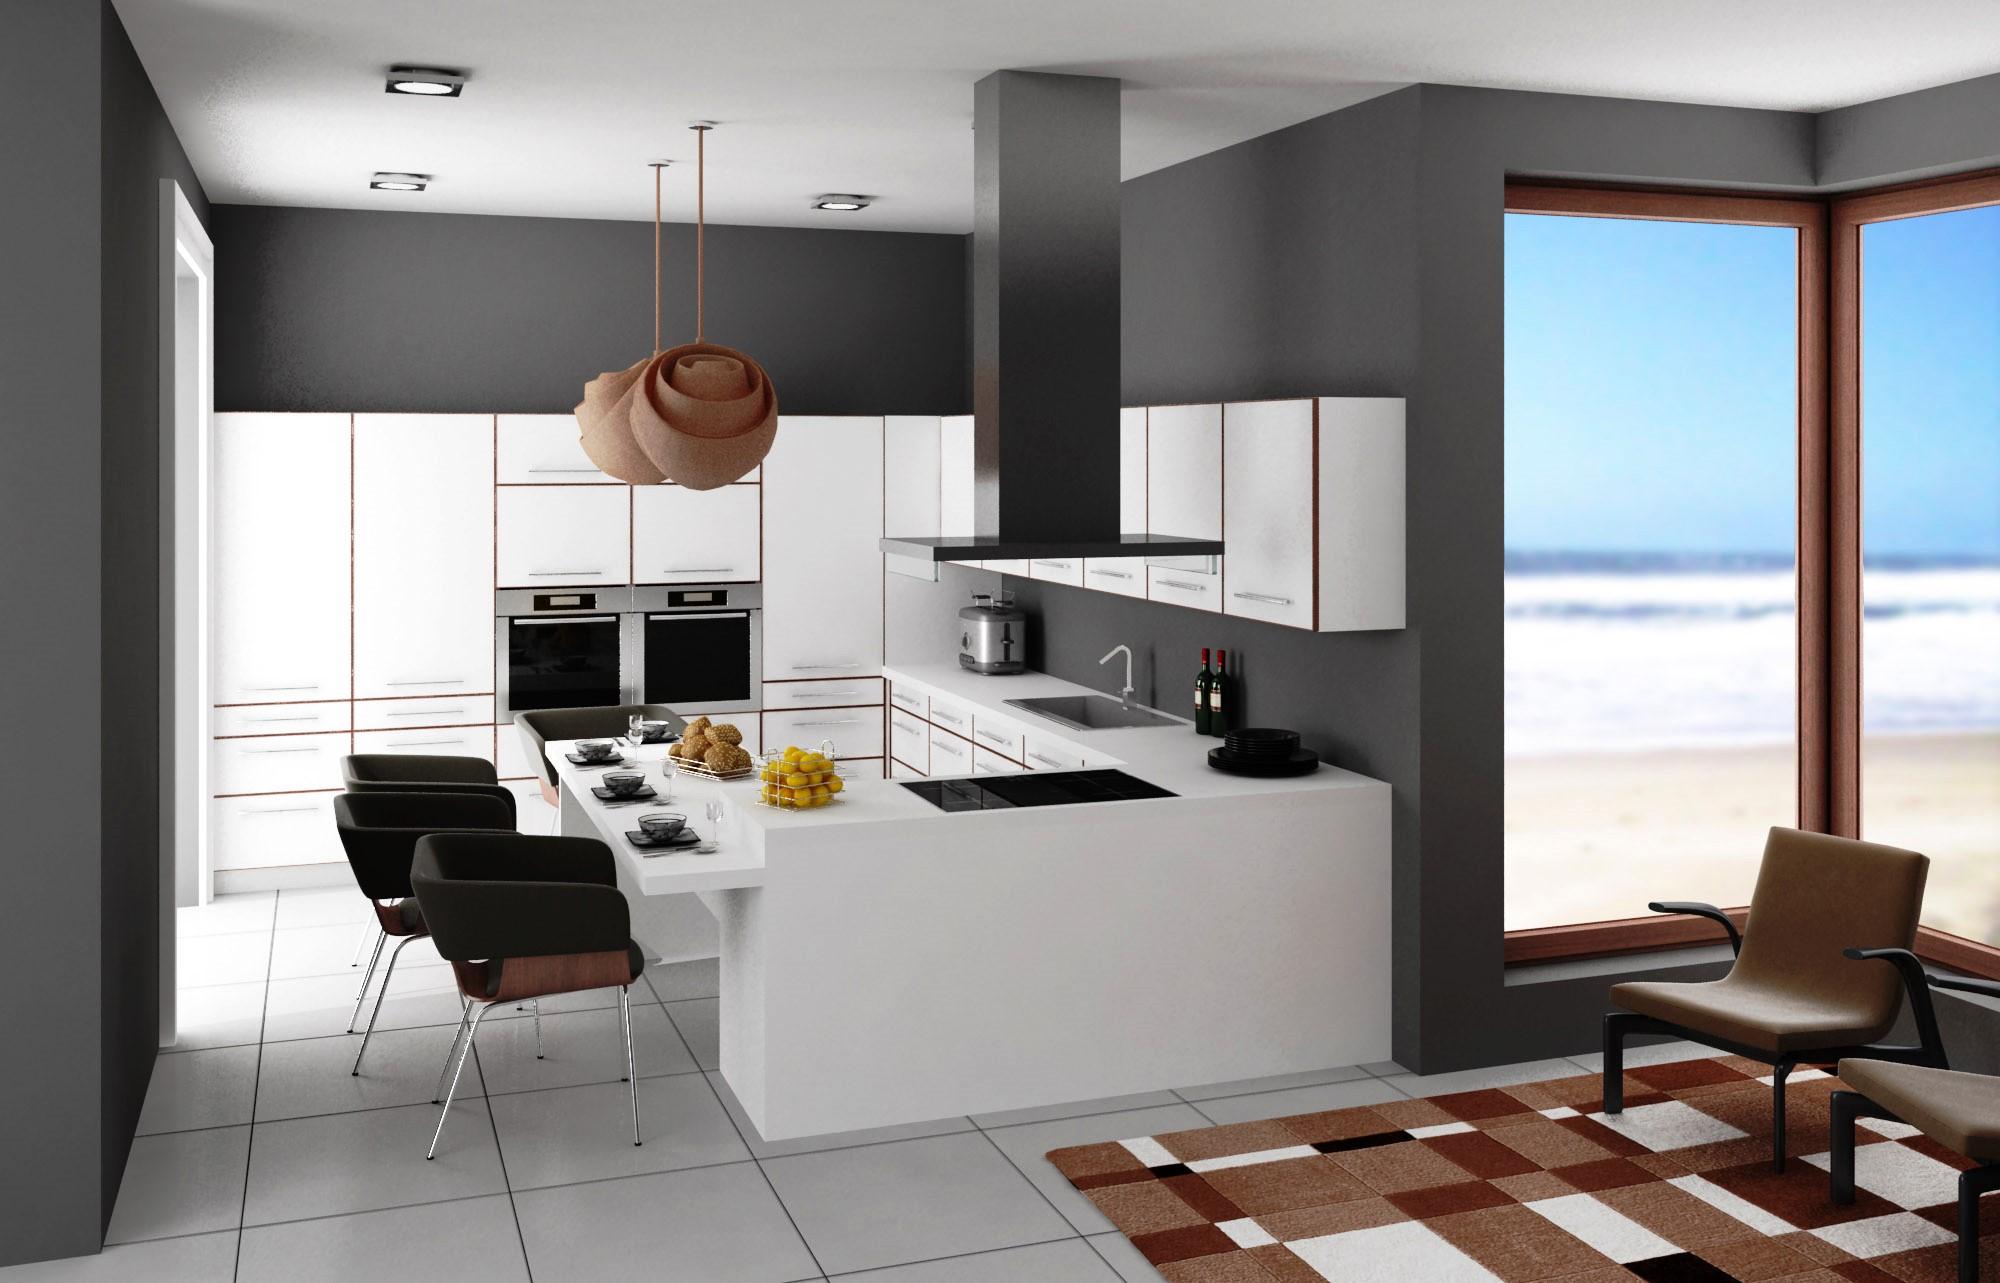 Las cocinas de estulo moderno estn compuestas por muebles lisos que facilitan su limpieza y dificultan la acumulacin e sucuiedad. La ventilacion de su cocina es de extrema importancia.